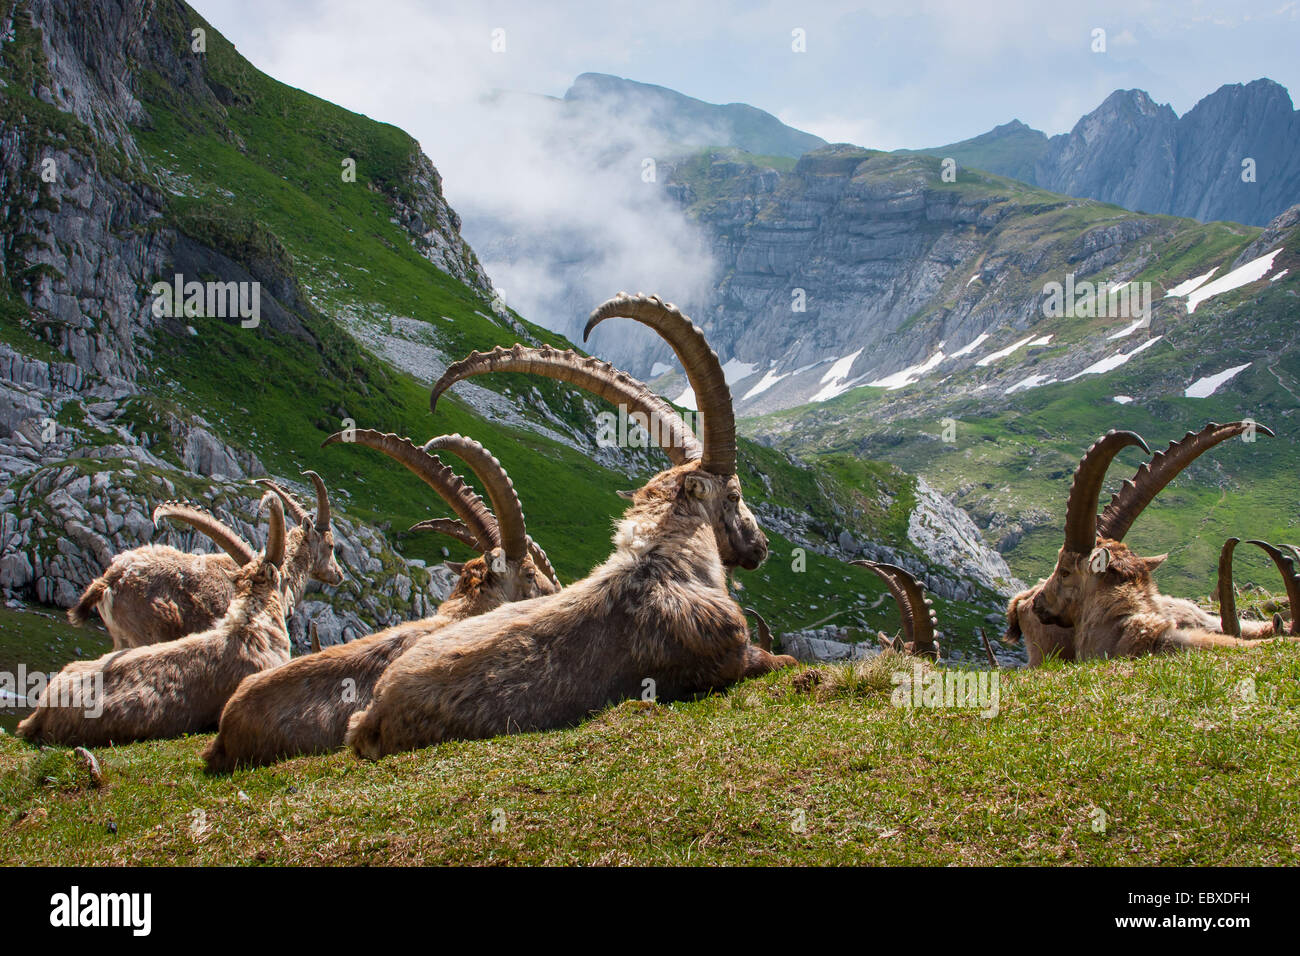 Stambecco delle Alpi (Capra ibex, Capra ibex ibex), gruppo di stambecchi in appoggio di fronte all imponente scenario di montagna, Svizzera, Alpstein, Saentis Foto Stock